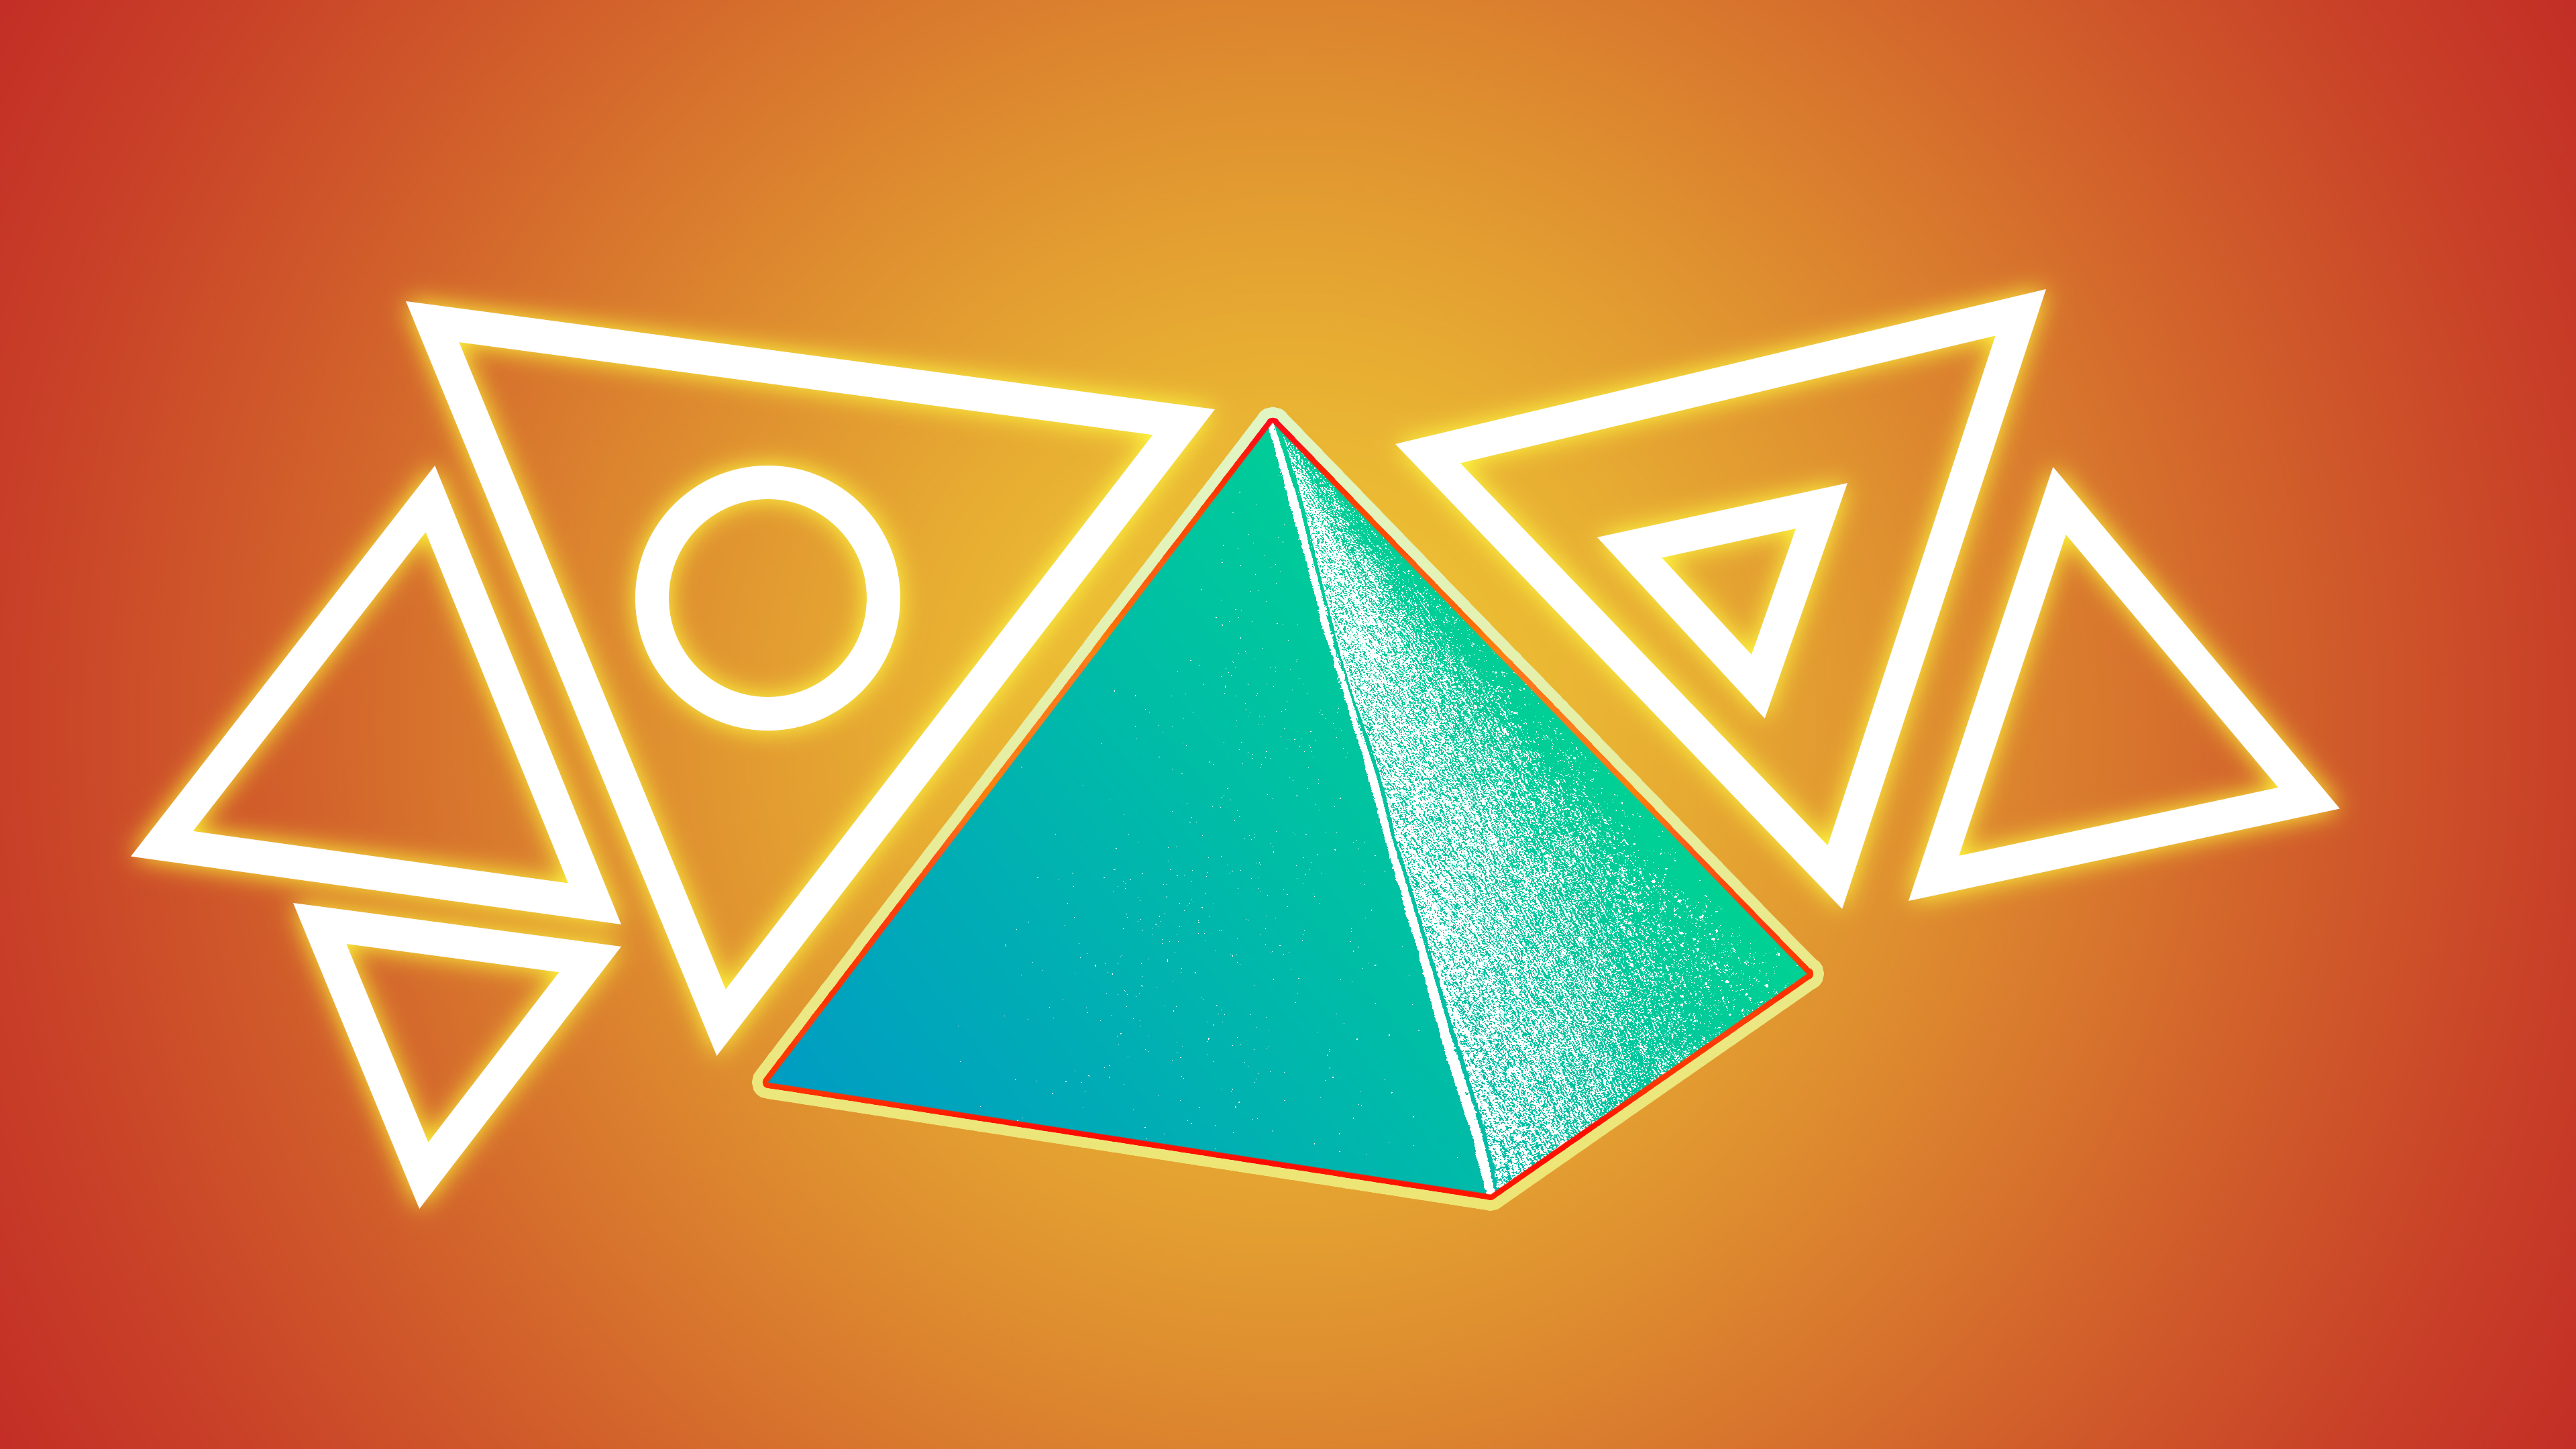 Скачать обои бесплатно Треугольник, Пирамида, Художественные картинка на рабочий стол ПК